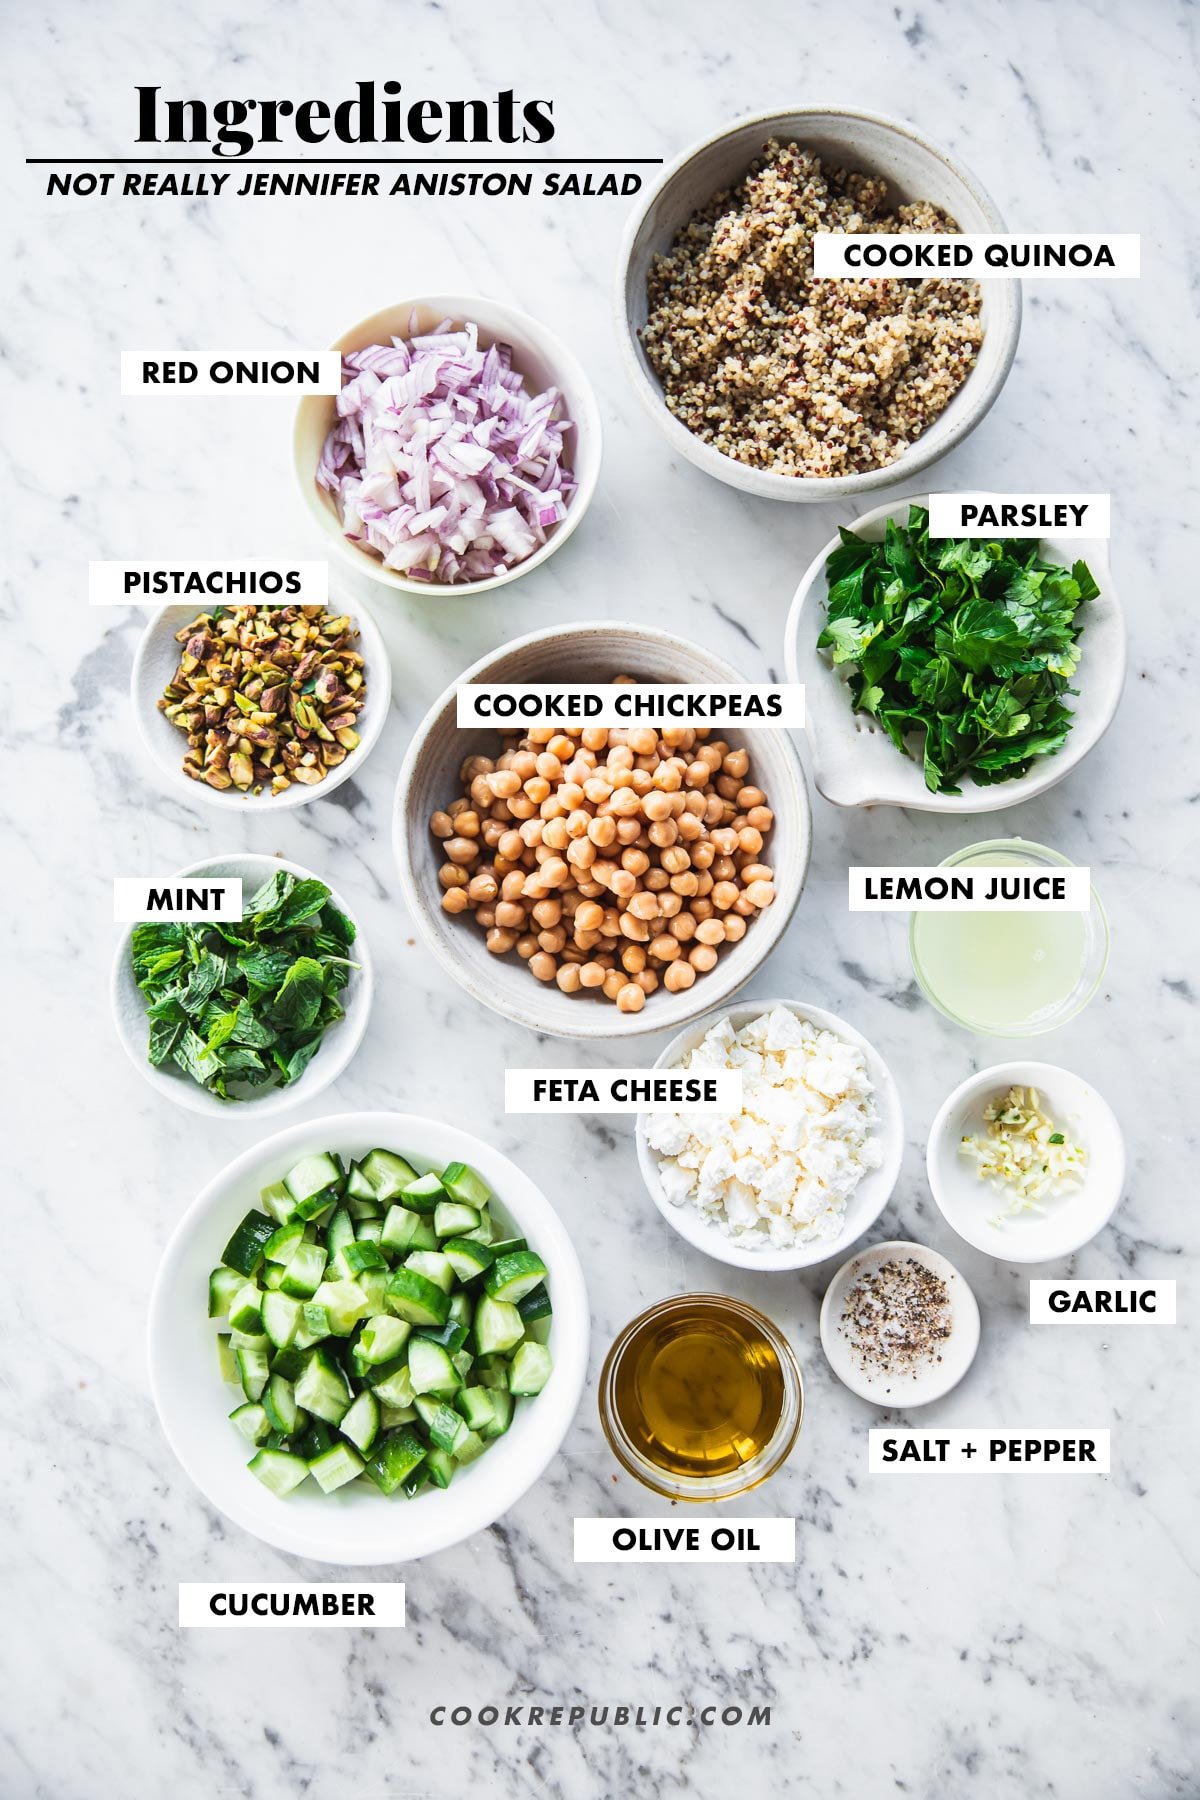 Ingrédients de la salade Jennifer Aniston mesurés dans des bols de quinoa, pois chiches, oignon, concombre, pistaches, fromage feta, persil, menthe, jus de citron, ail, huile d'olive, sel et poivre.